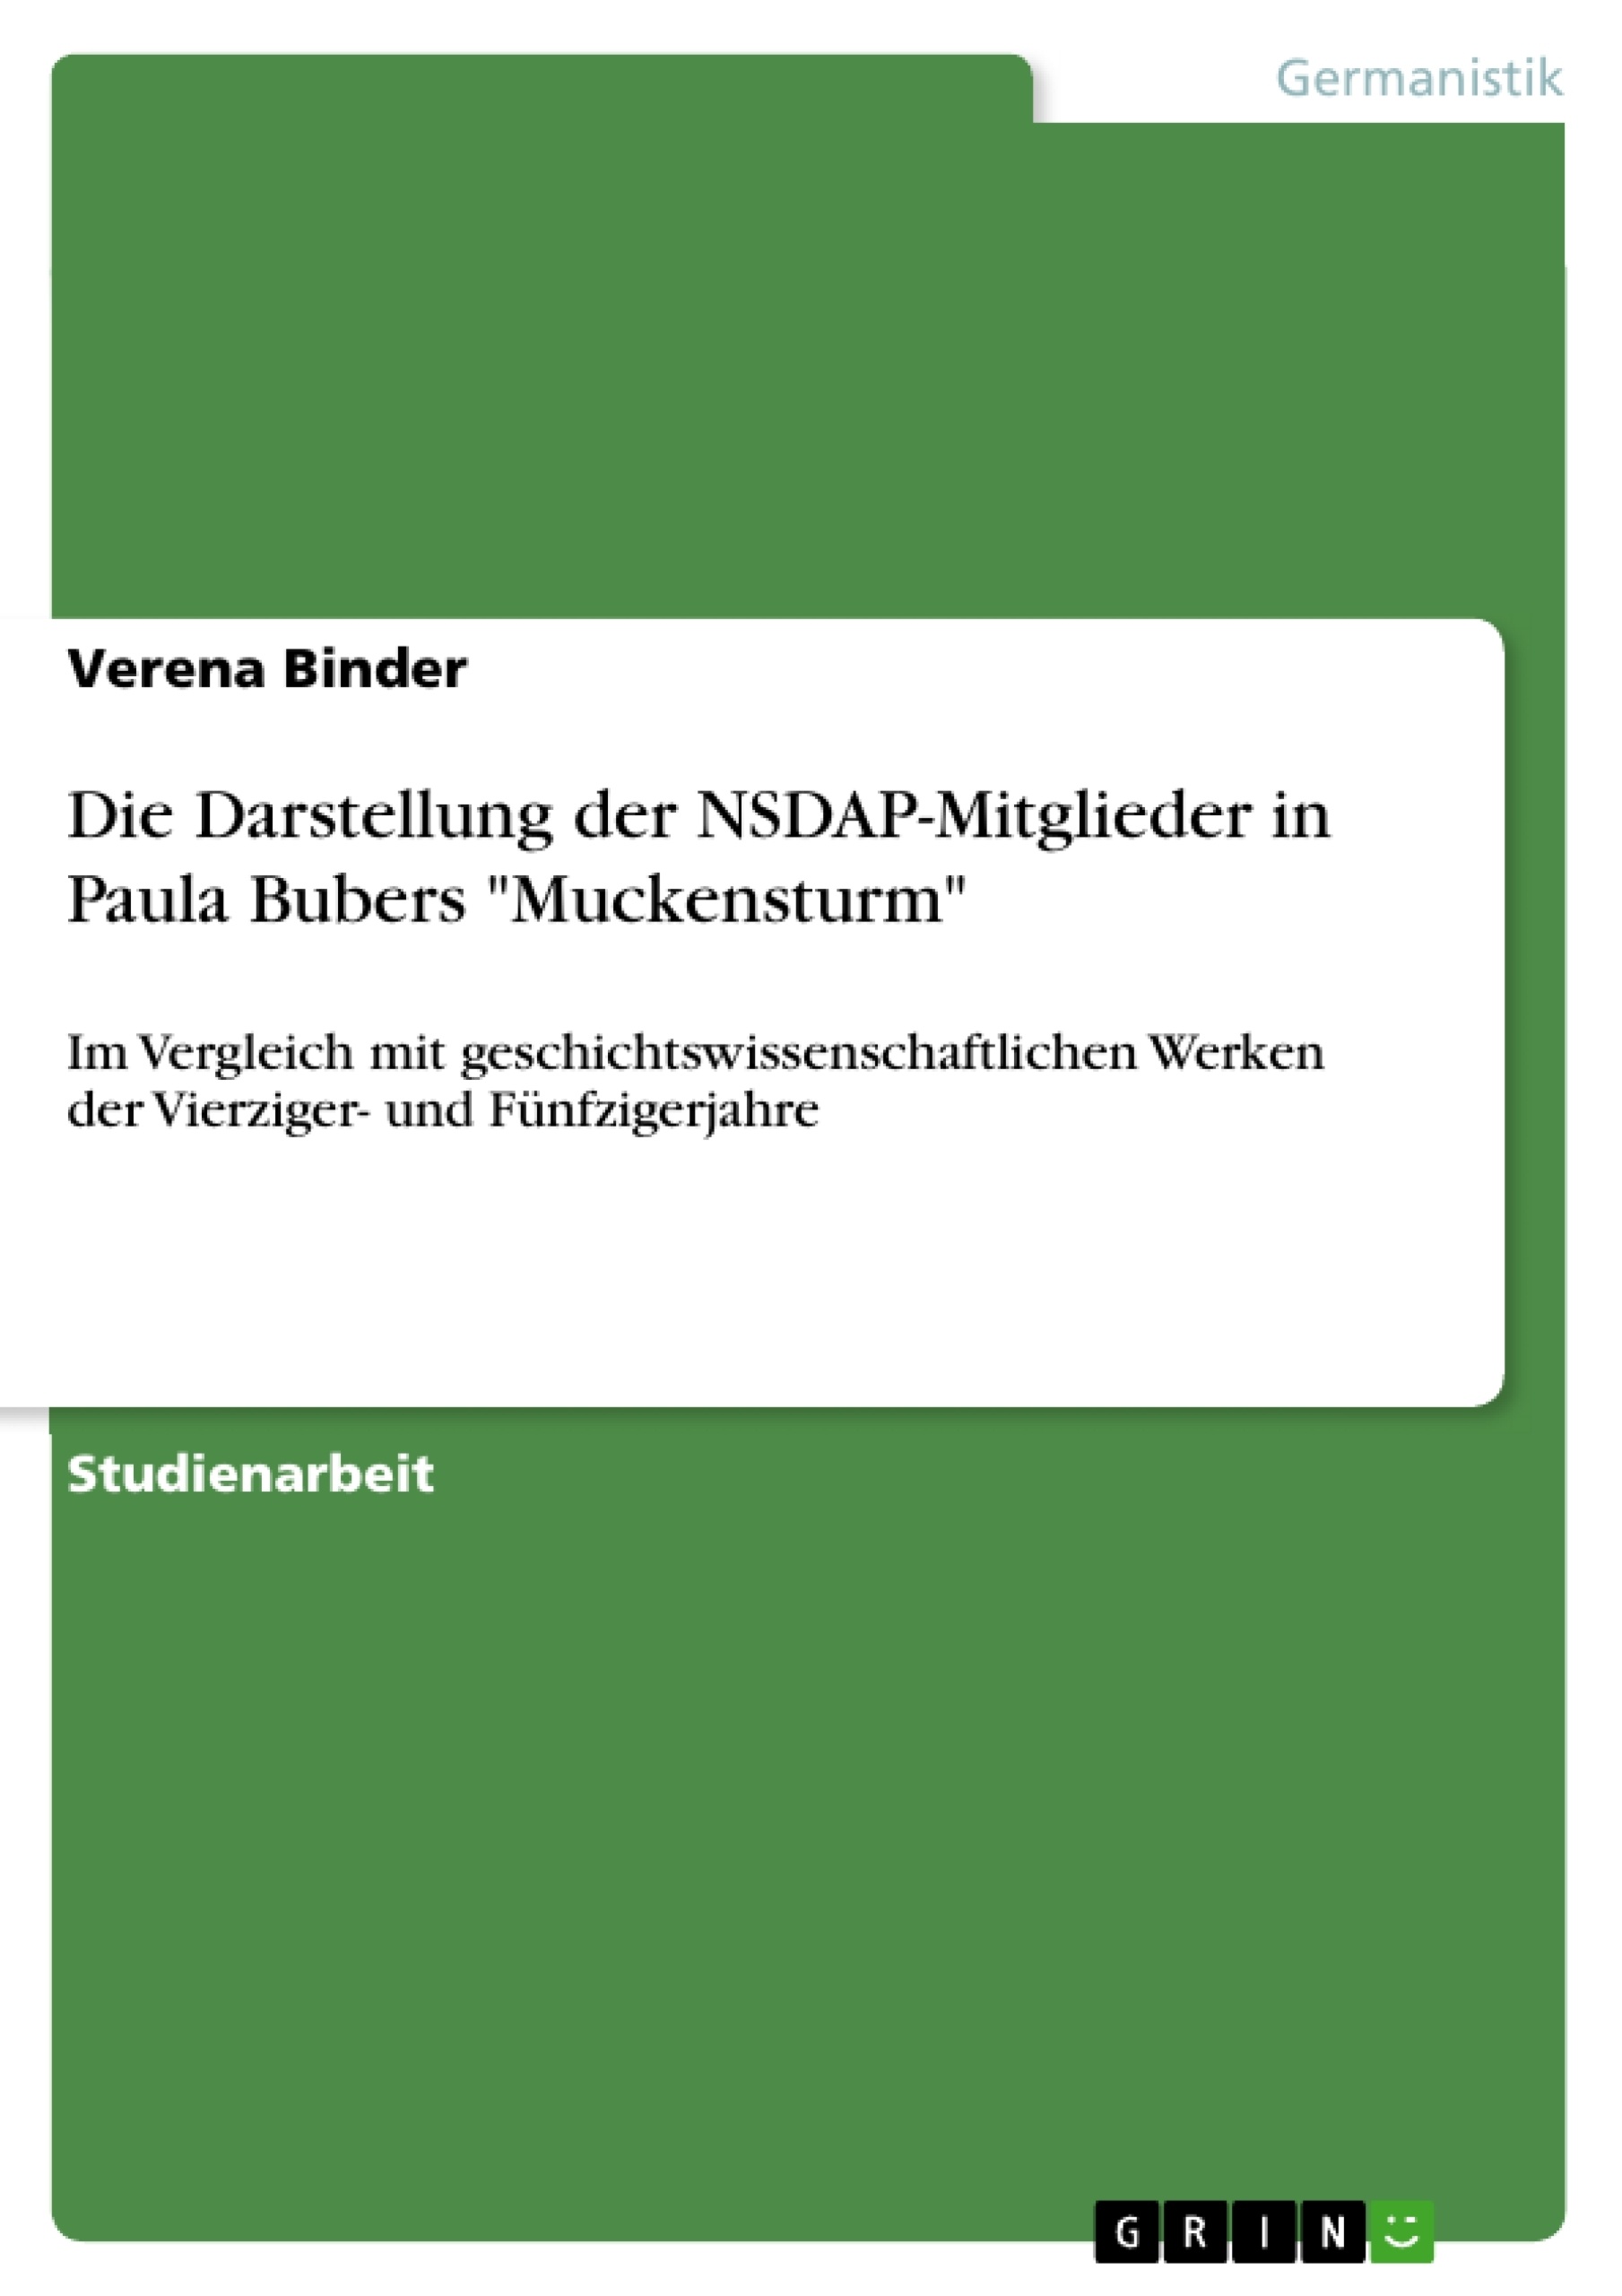 Título: Die Darstellung der NSDAP-Mitglieder in Paula Bubers "Muckensturm"